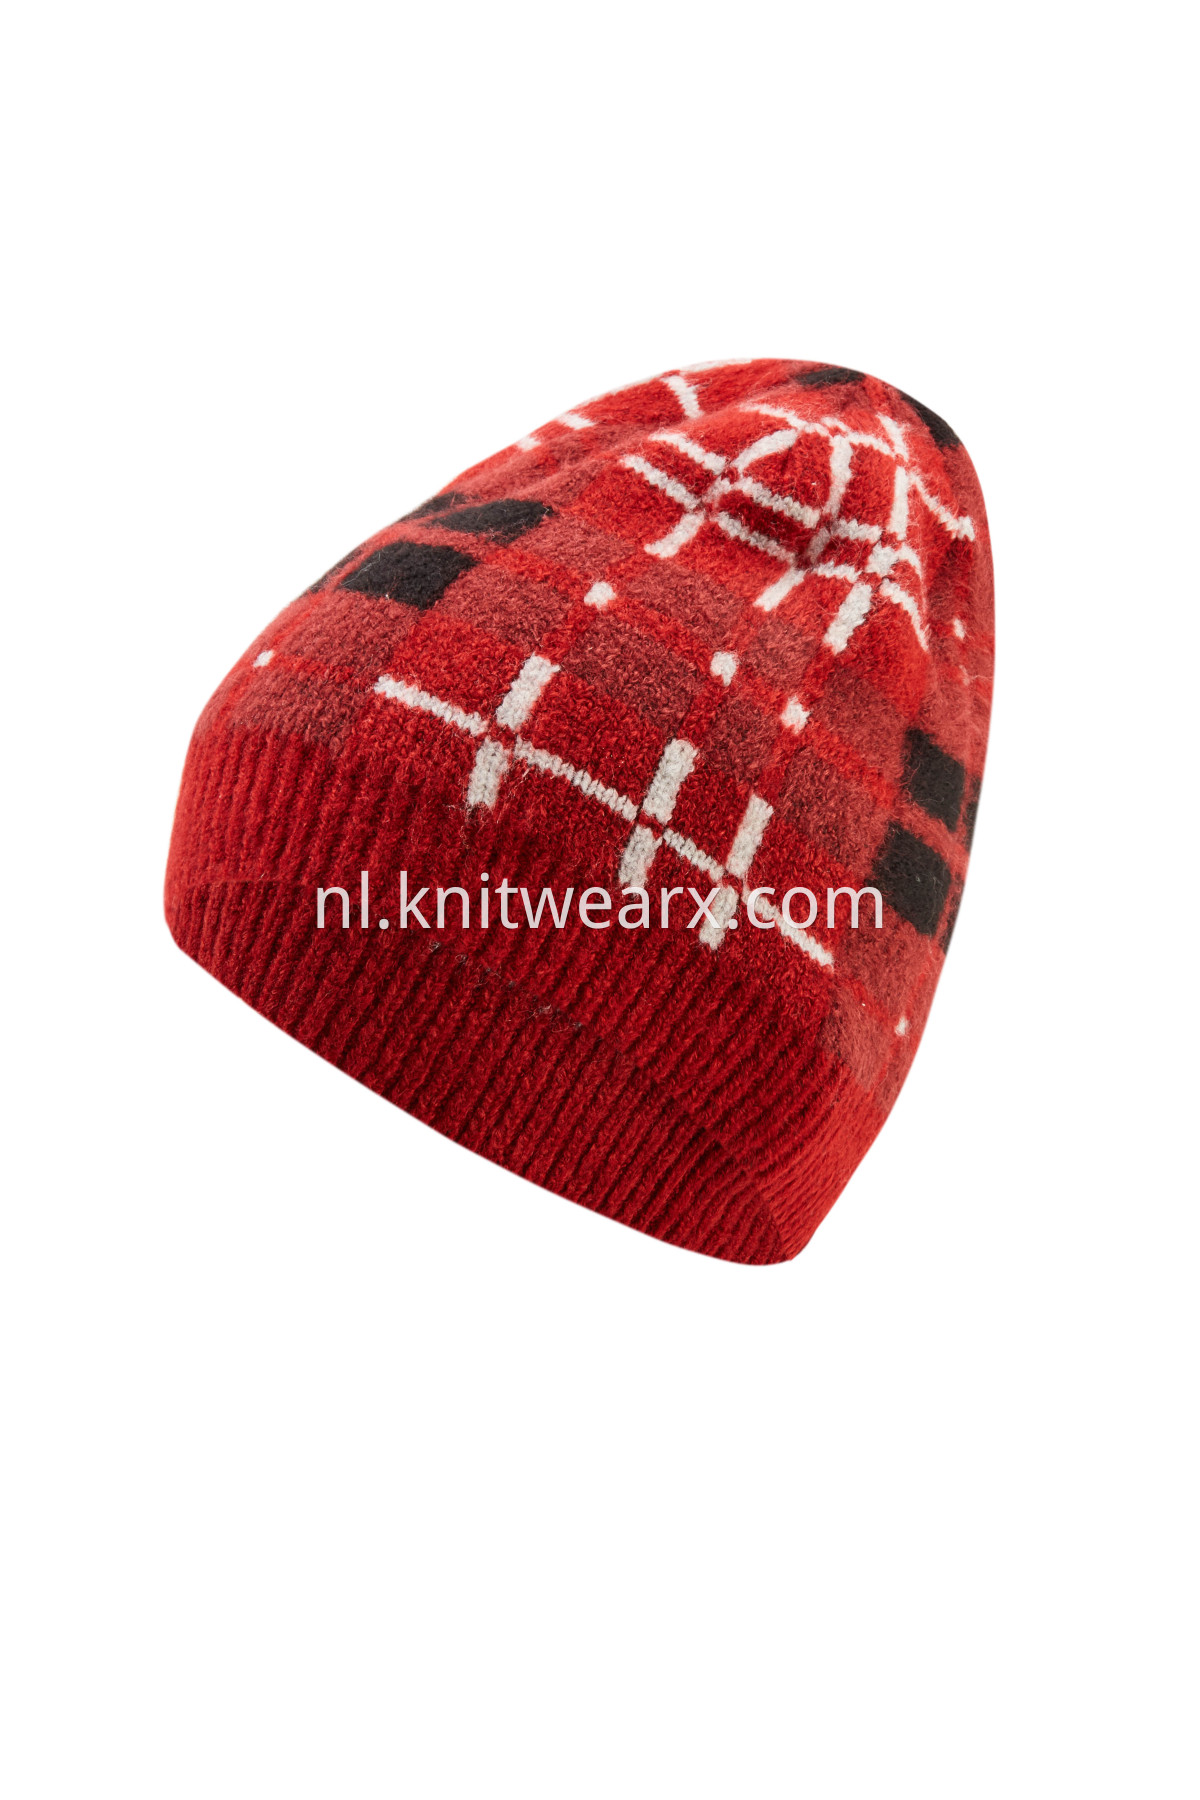 Girls' Winter Soft Beanie Smart Knit Cap